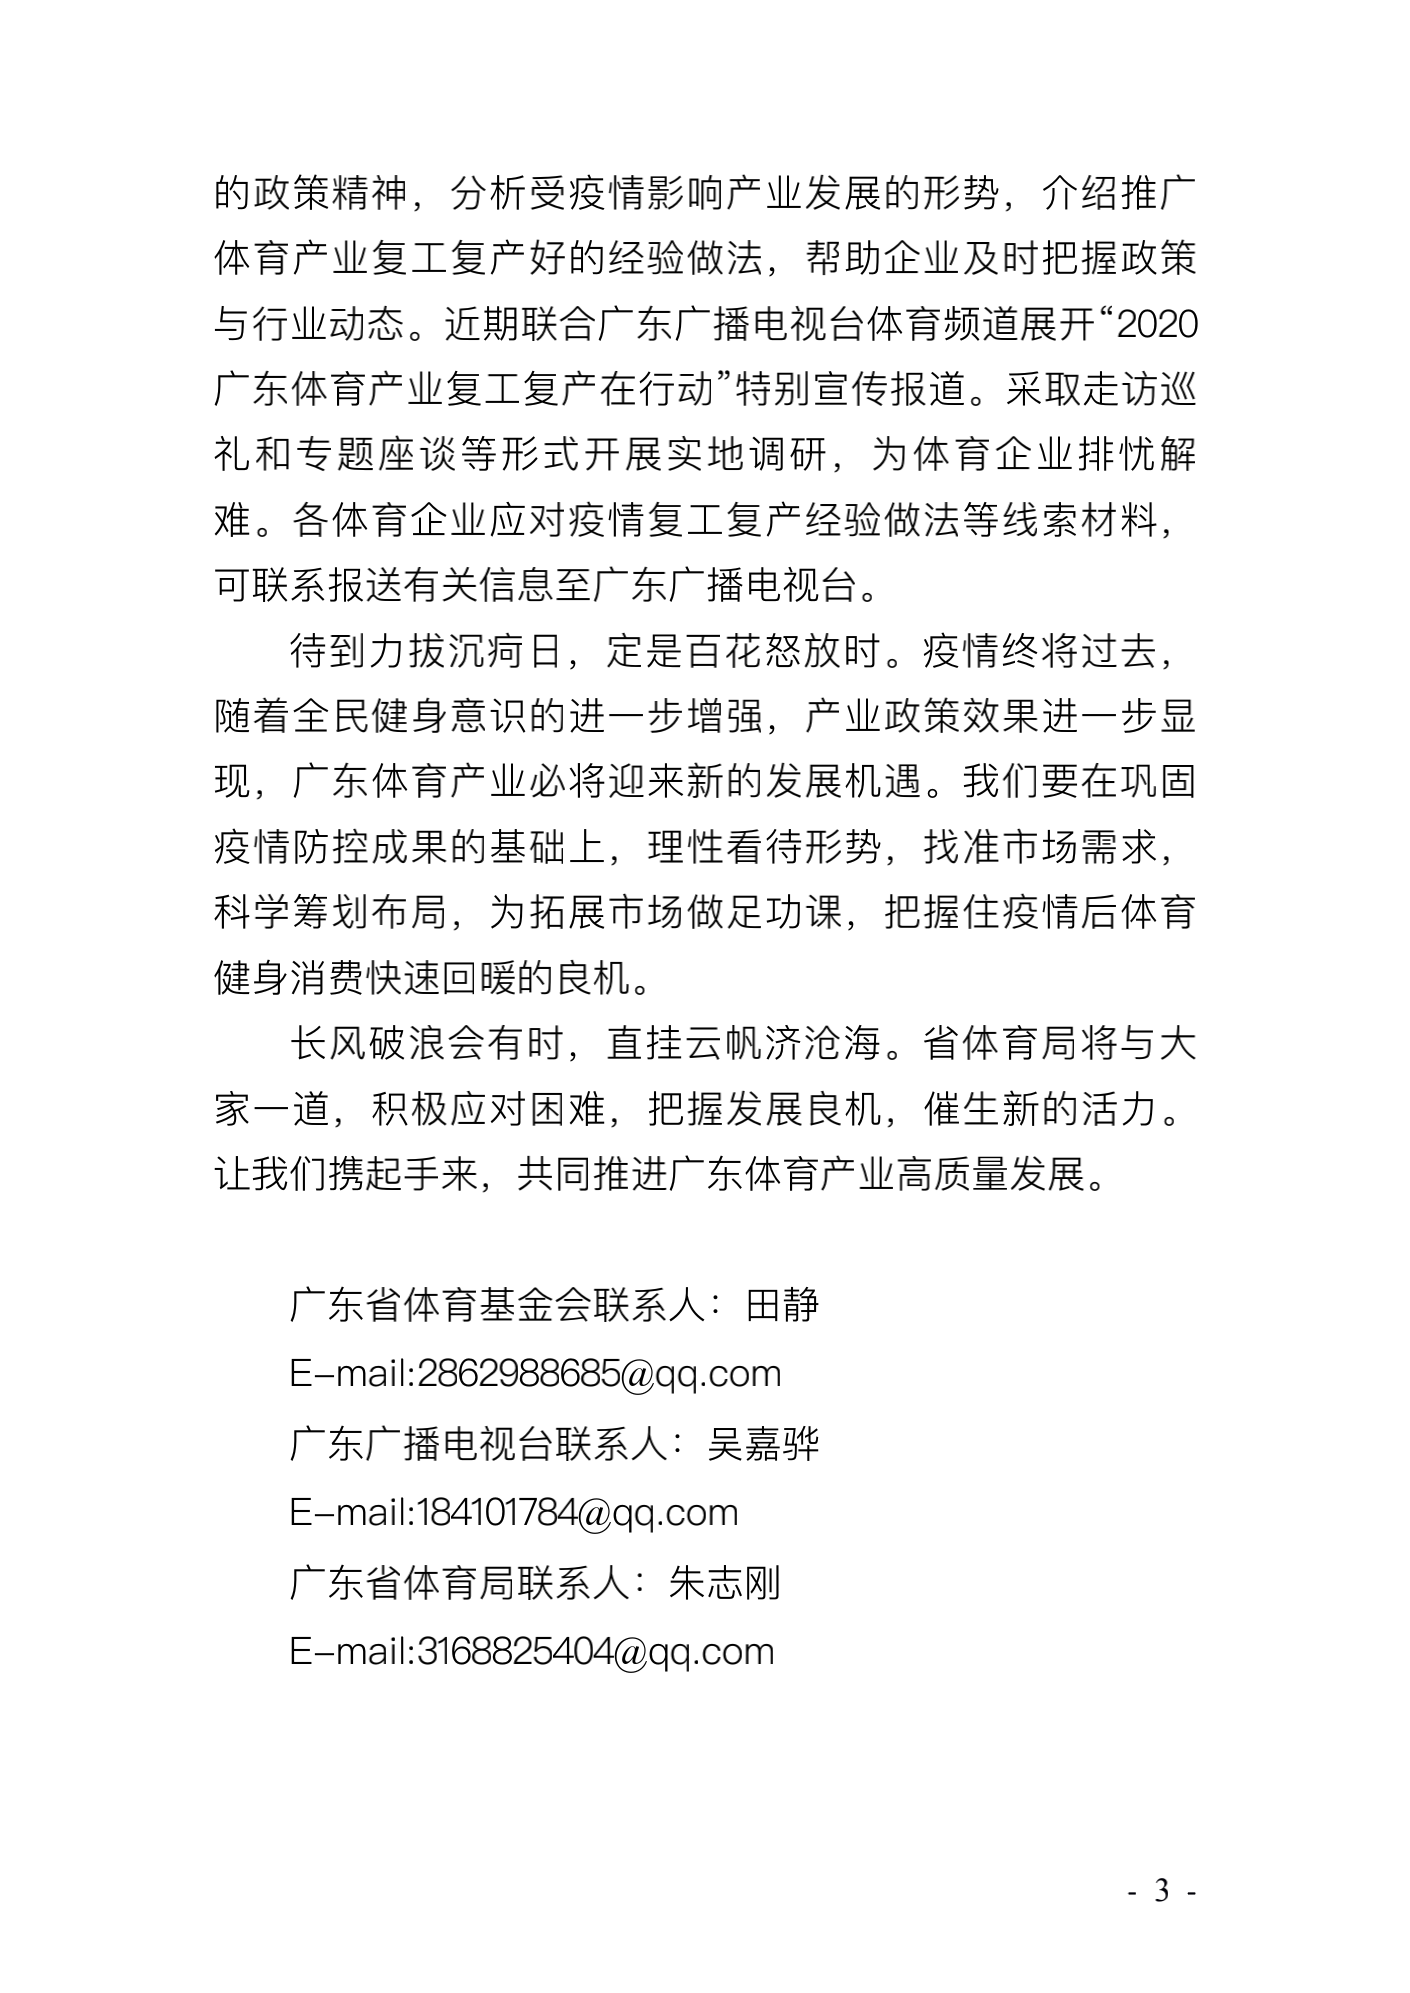 广东省体育局致广大体育企业的公开信_02.png